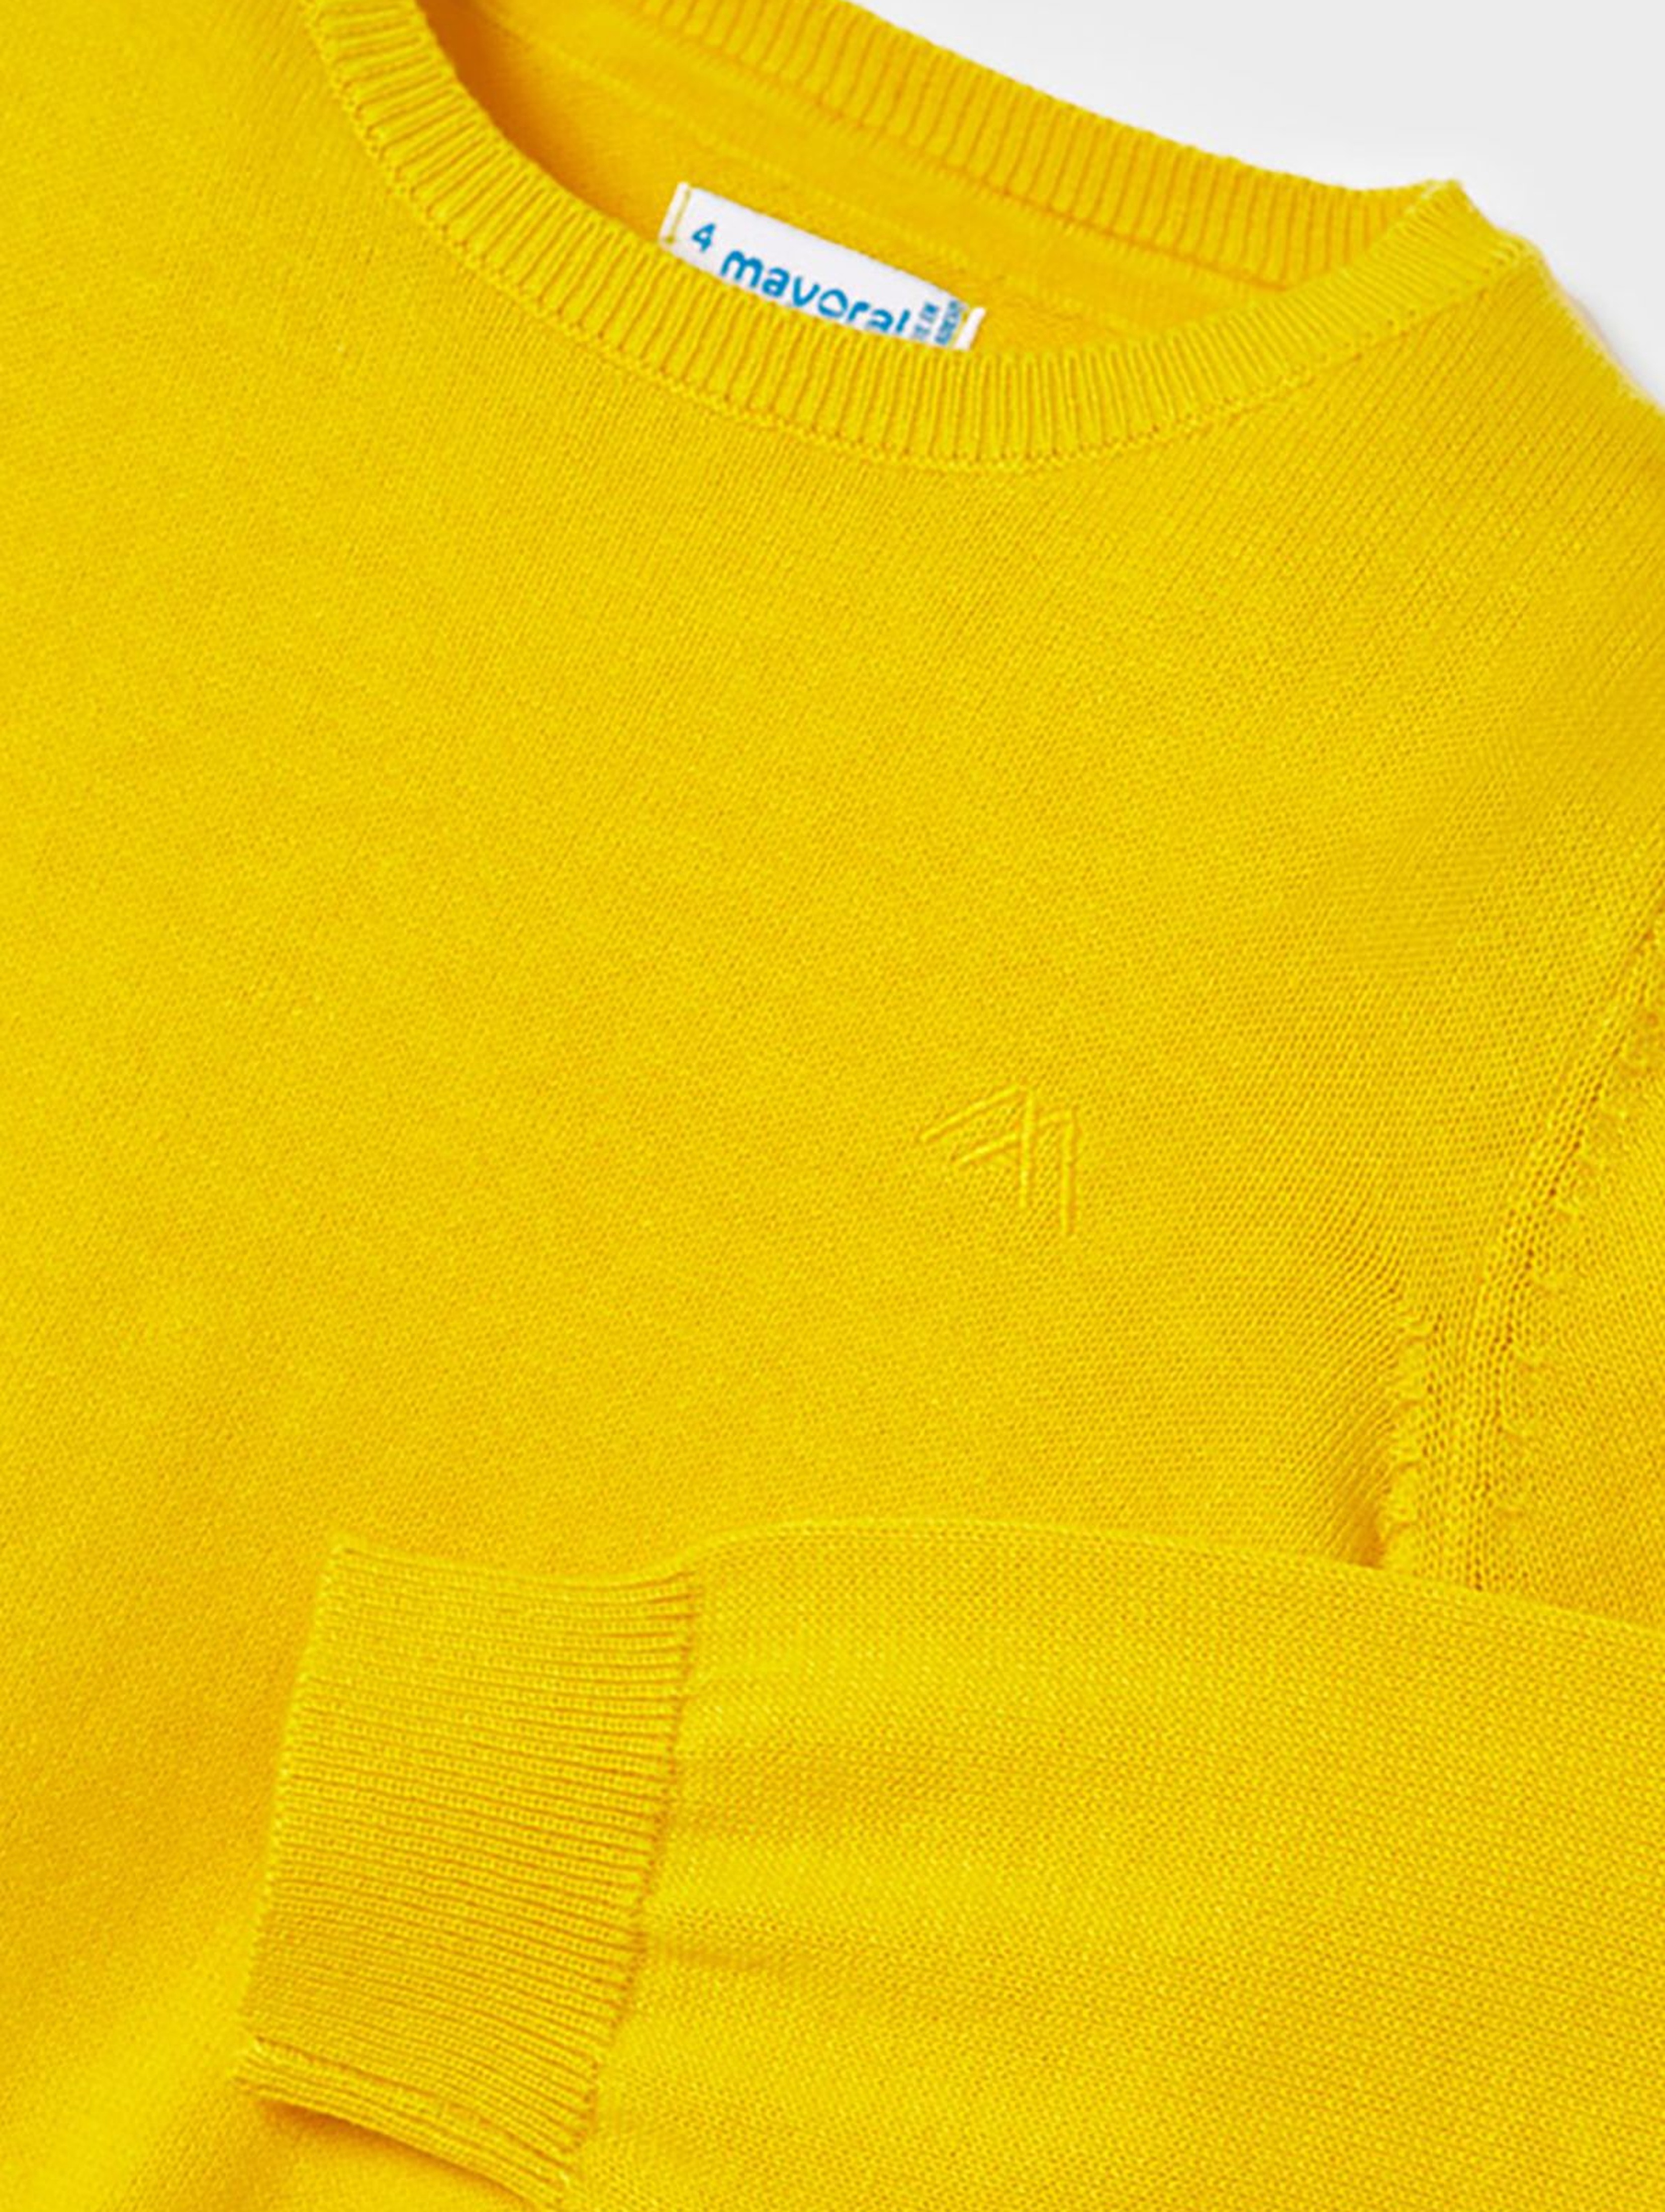 Sweter chłopięcy z lamówką Mayoral - żółty